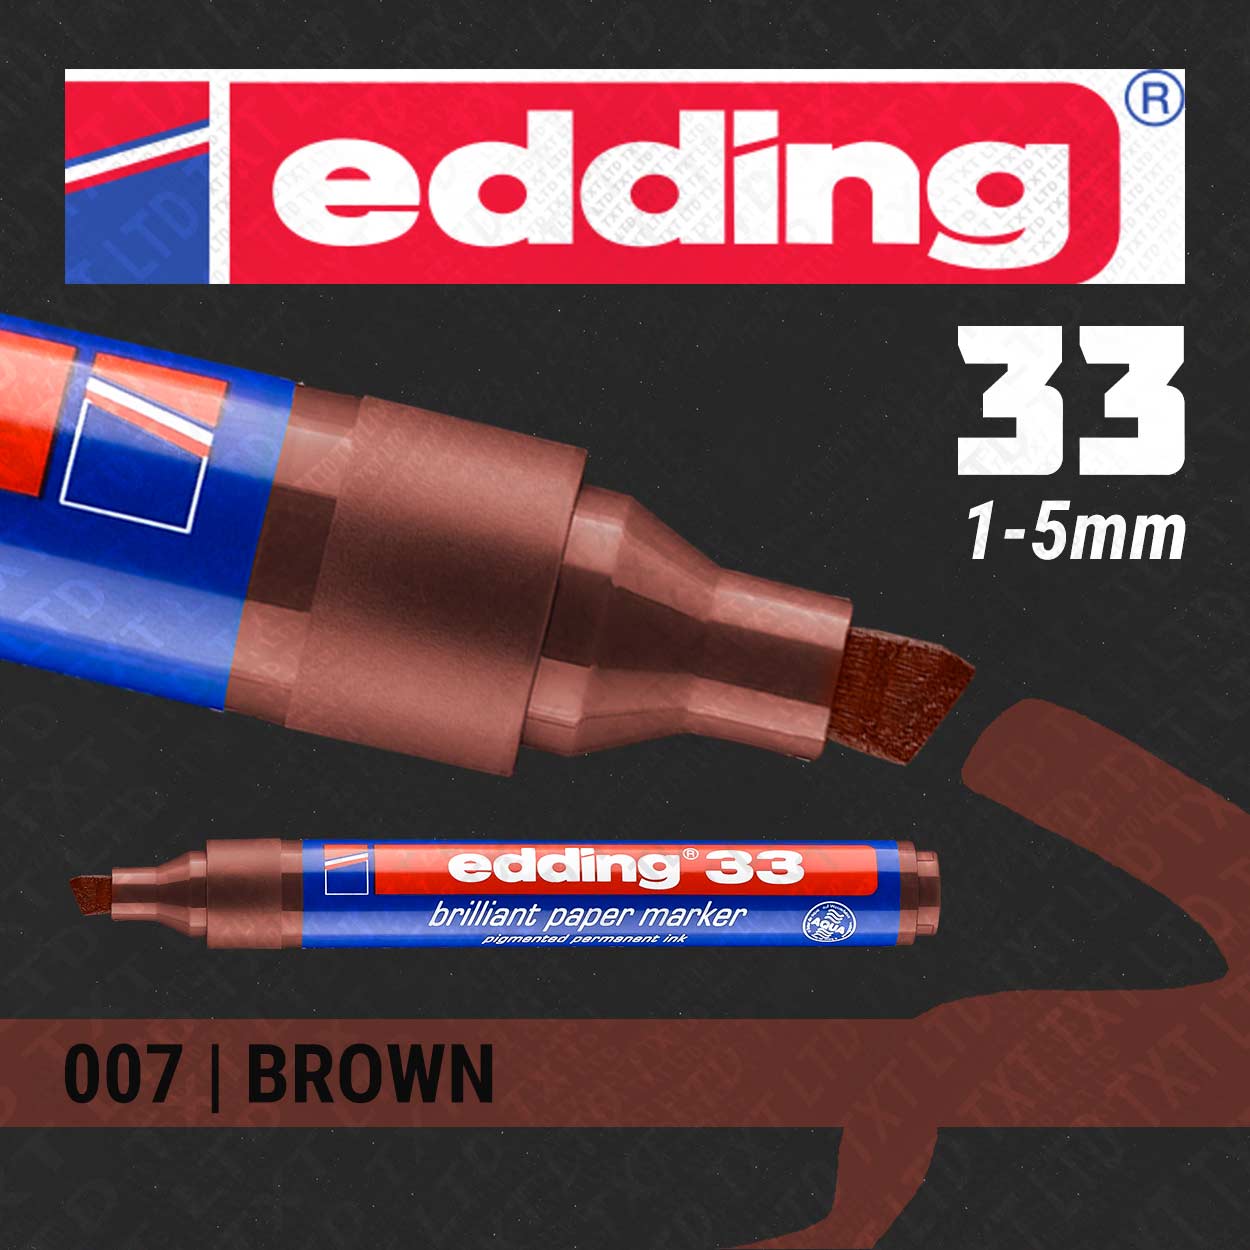 edding 33 Brilliant Paper Marker